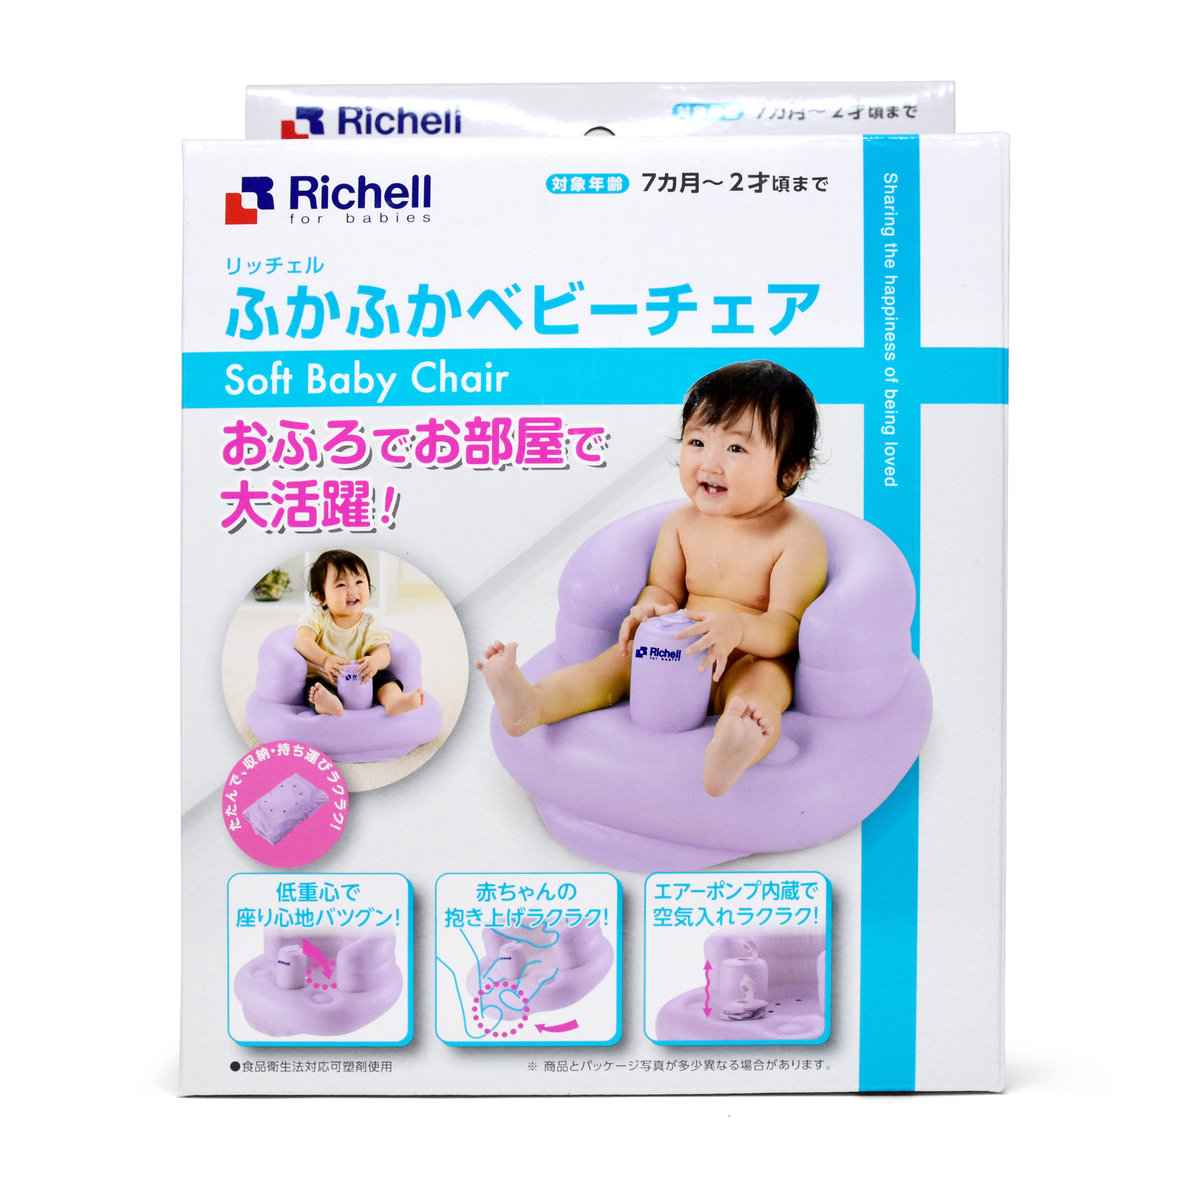 Richell 嬰兒充氣坐椅 (紫色)